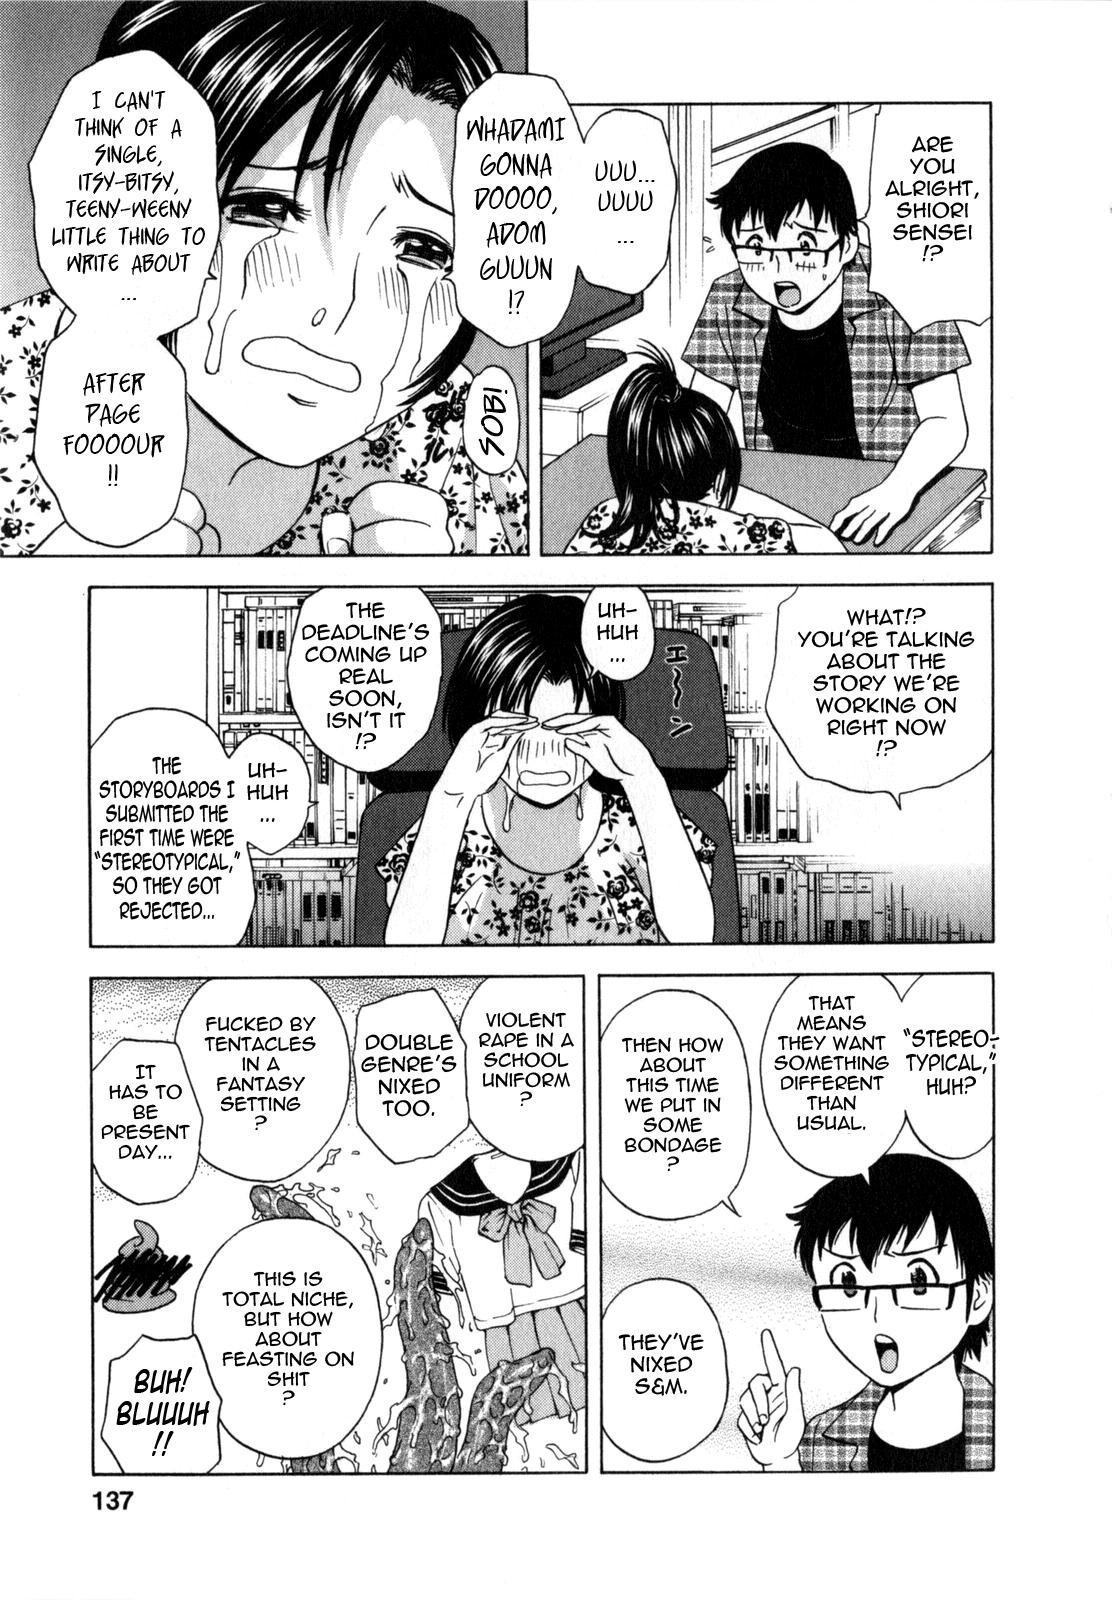 Manga no youna Hitozuma to no Hibi - Days with Married Women such as Comics. 137